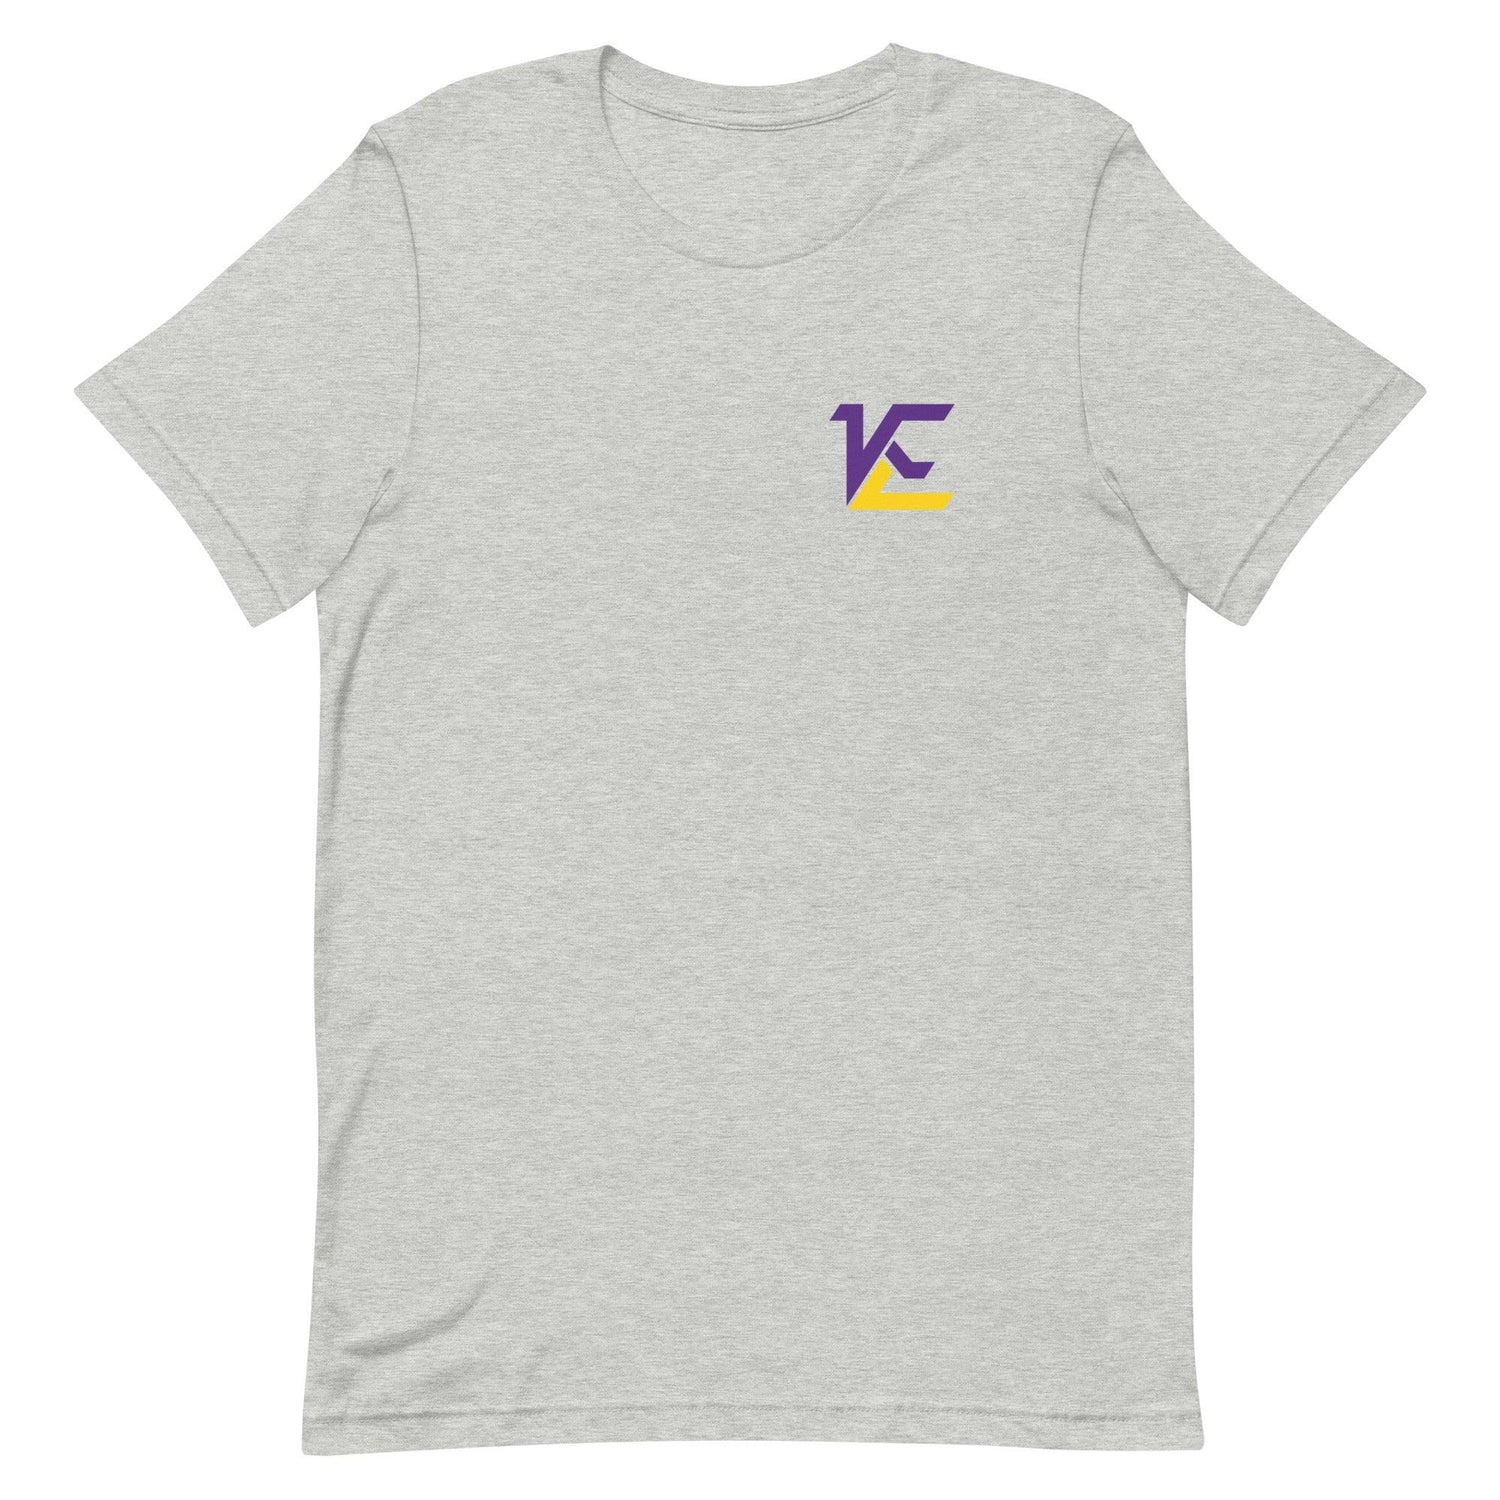 Kamarro Edmonds "Elite" t-shirt - Fan Arch